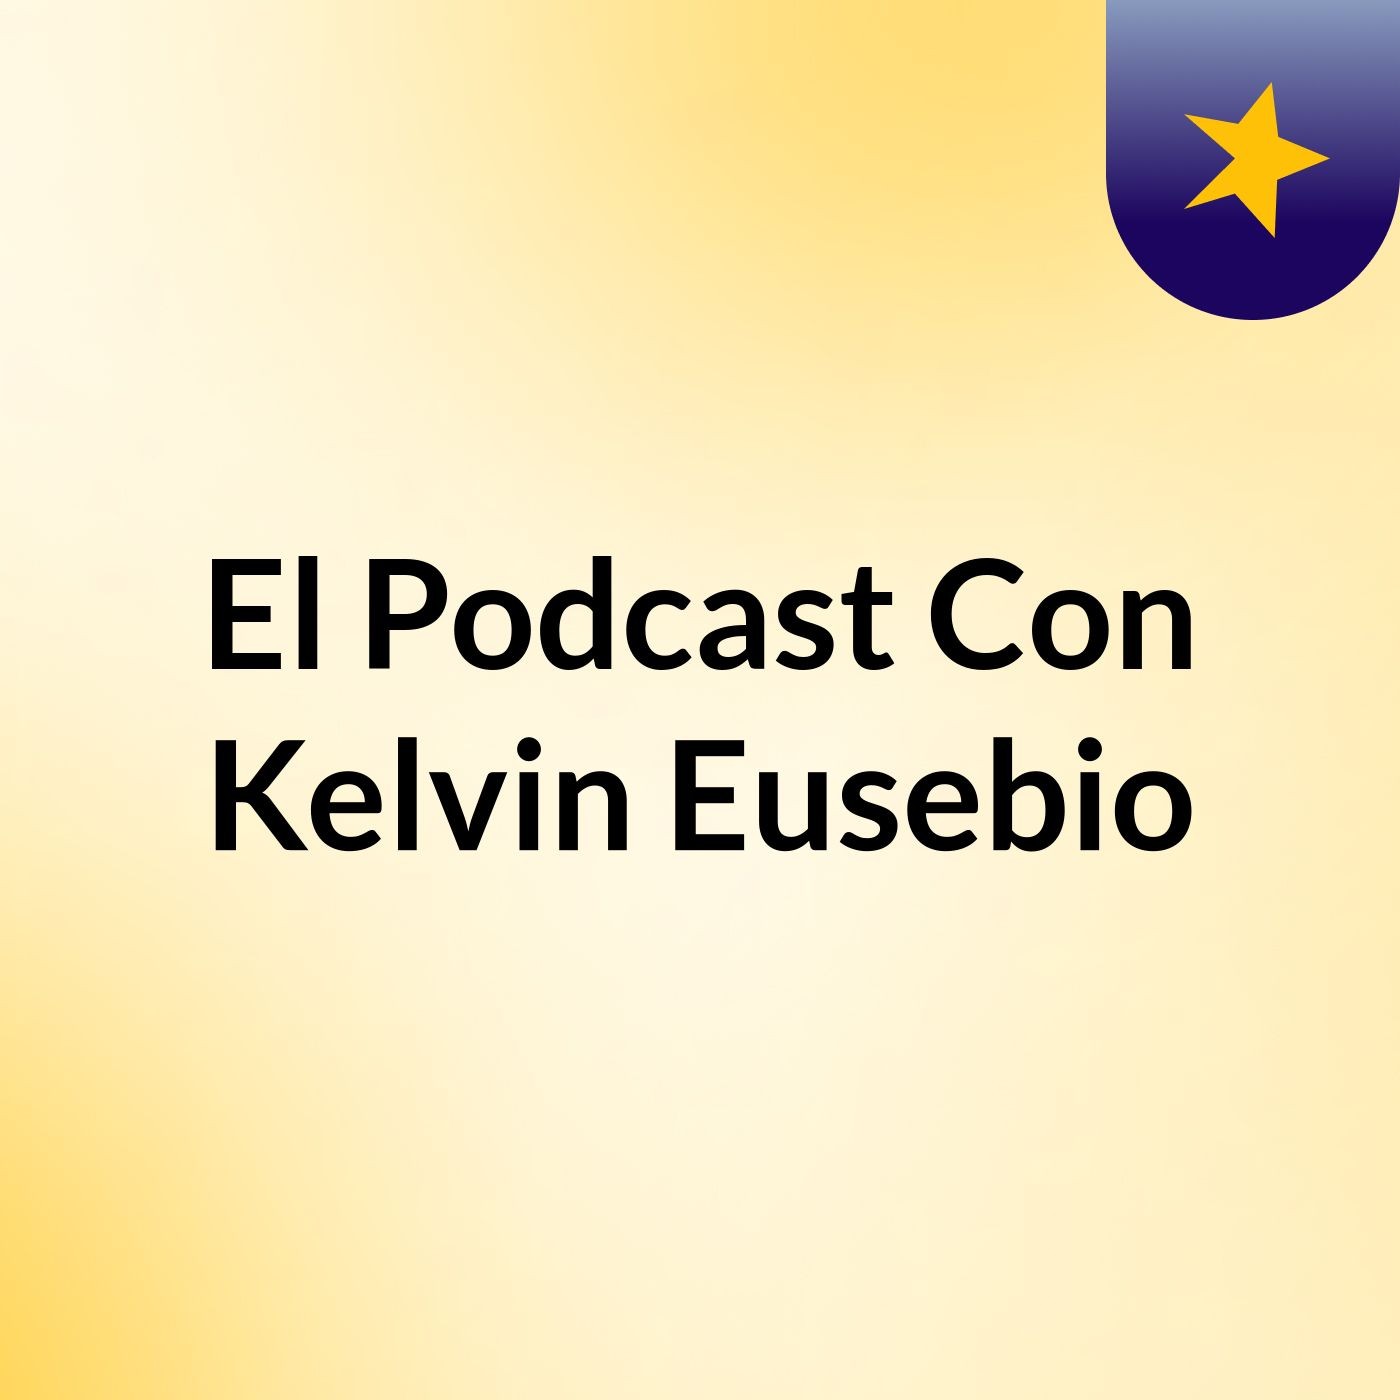 El Podcast Con Kelvin Eusebio